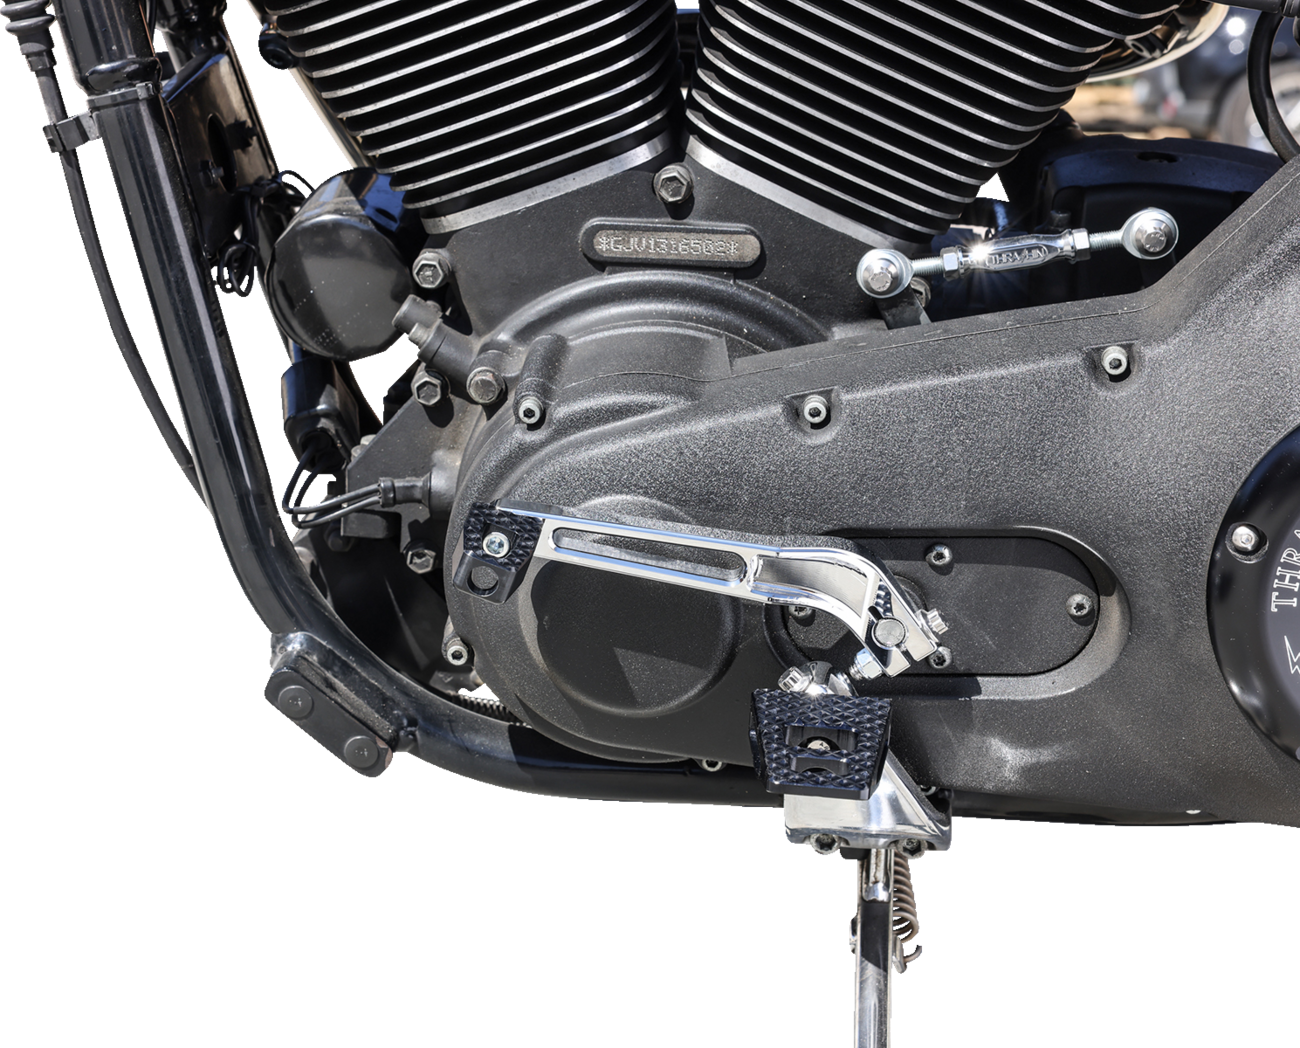 Black P-54 Change Pedal for Harley Davidson